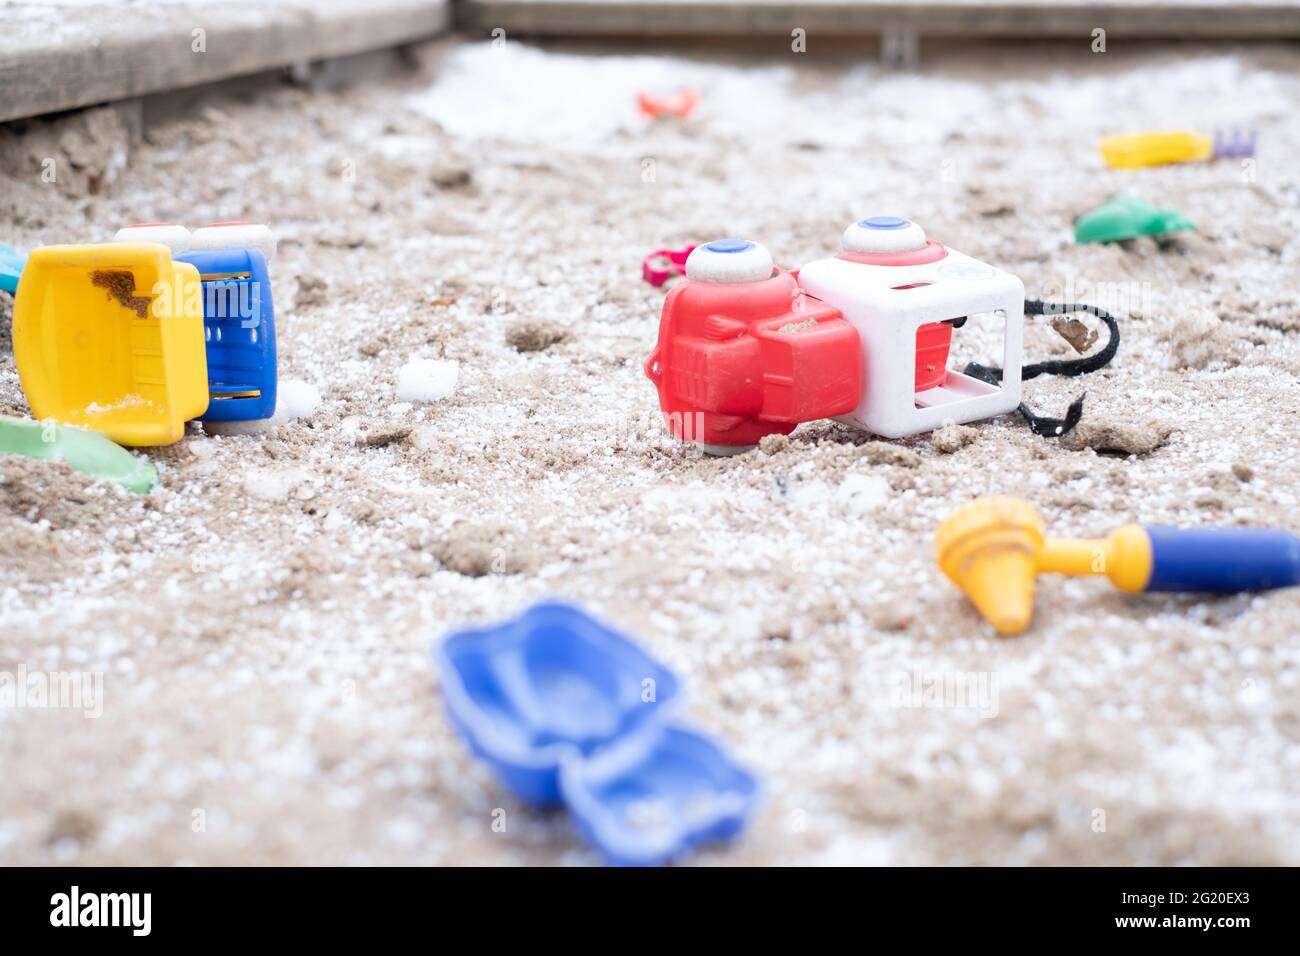 Kids toys scattered around in snowy frozen sandbox during winter lockdown. Stock Photo